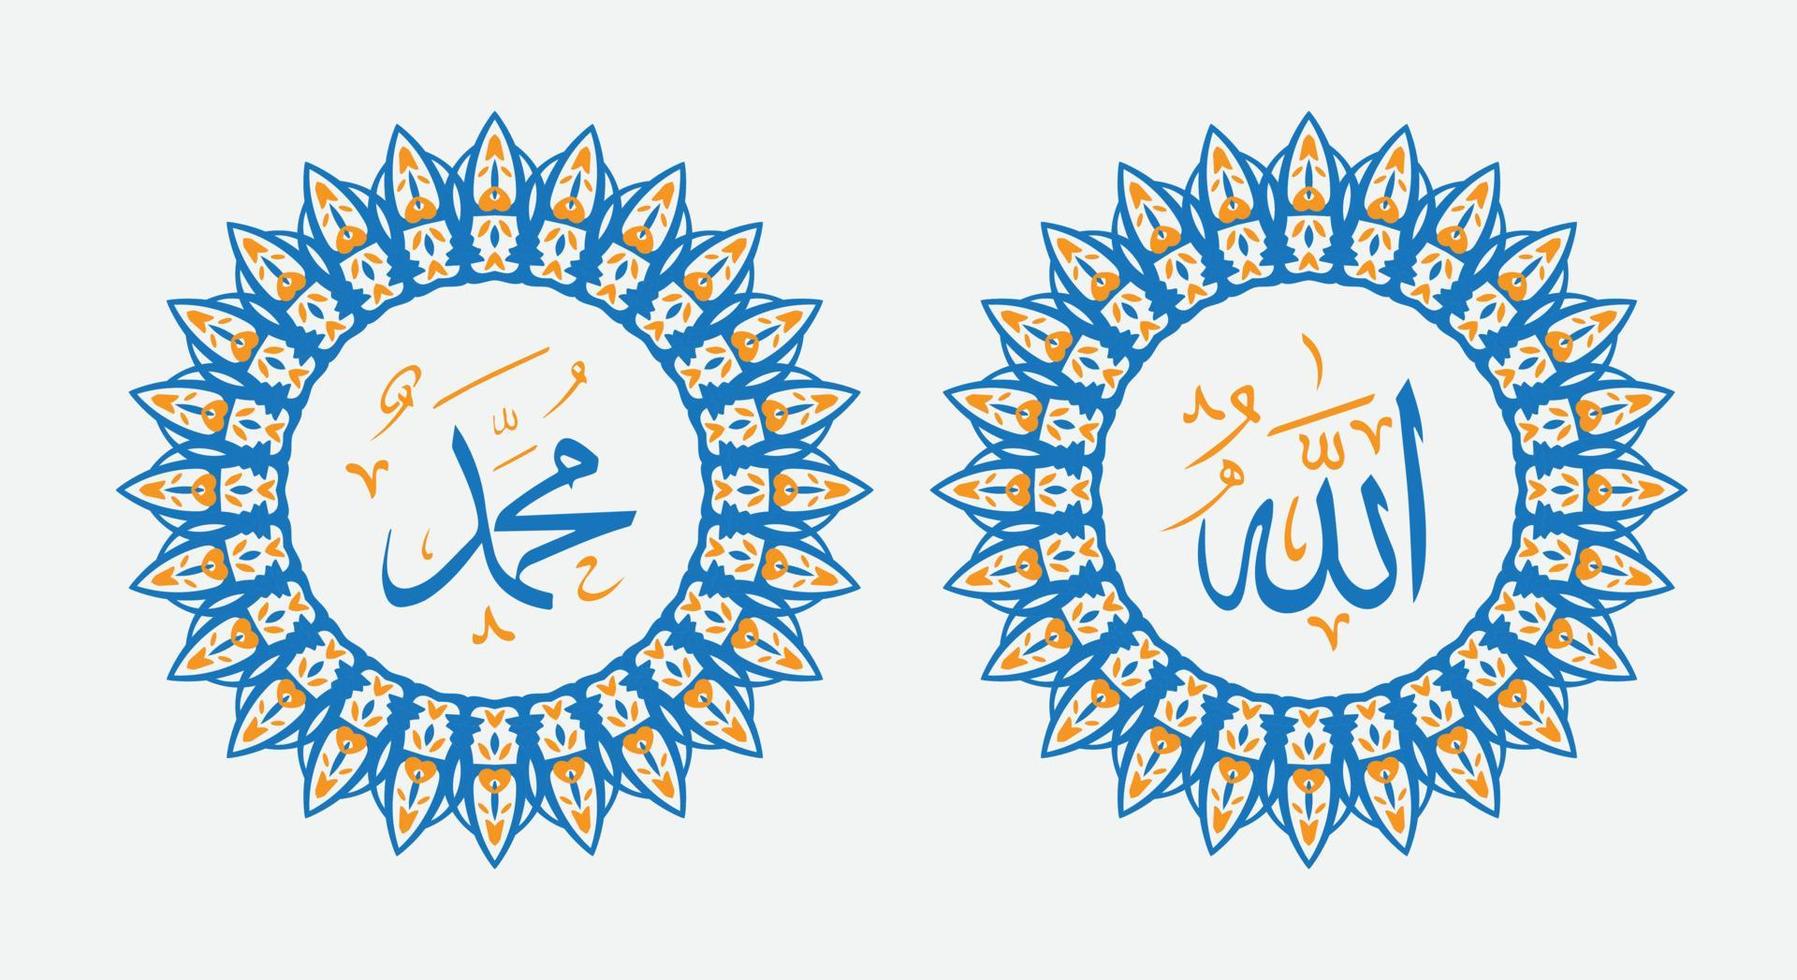 Allah Mohammed naam van Allah Mohammed, Allah Mohammed Arabisch Islamitisch schoonschrift kunst, met traditioneel kader en modern kleur vector